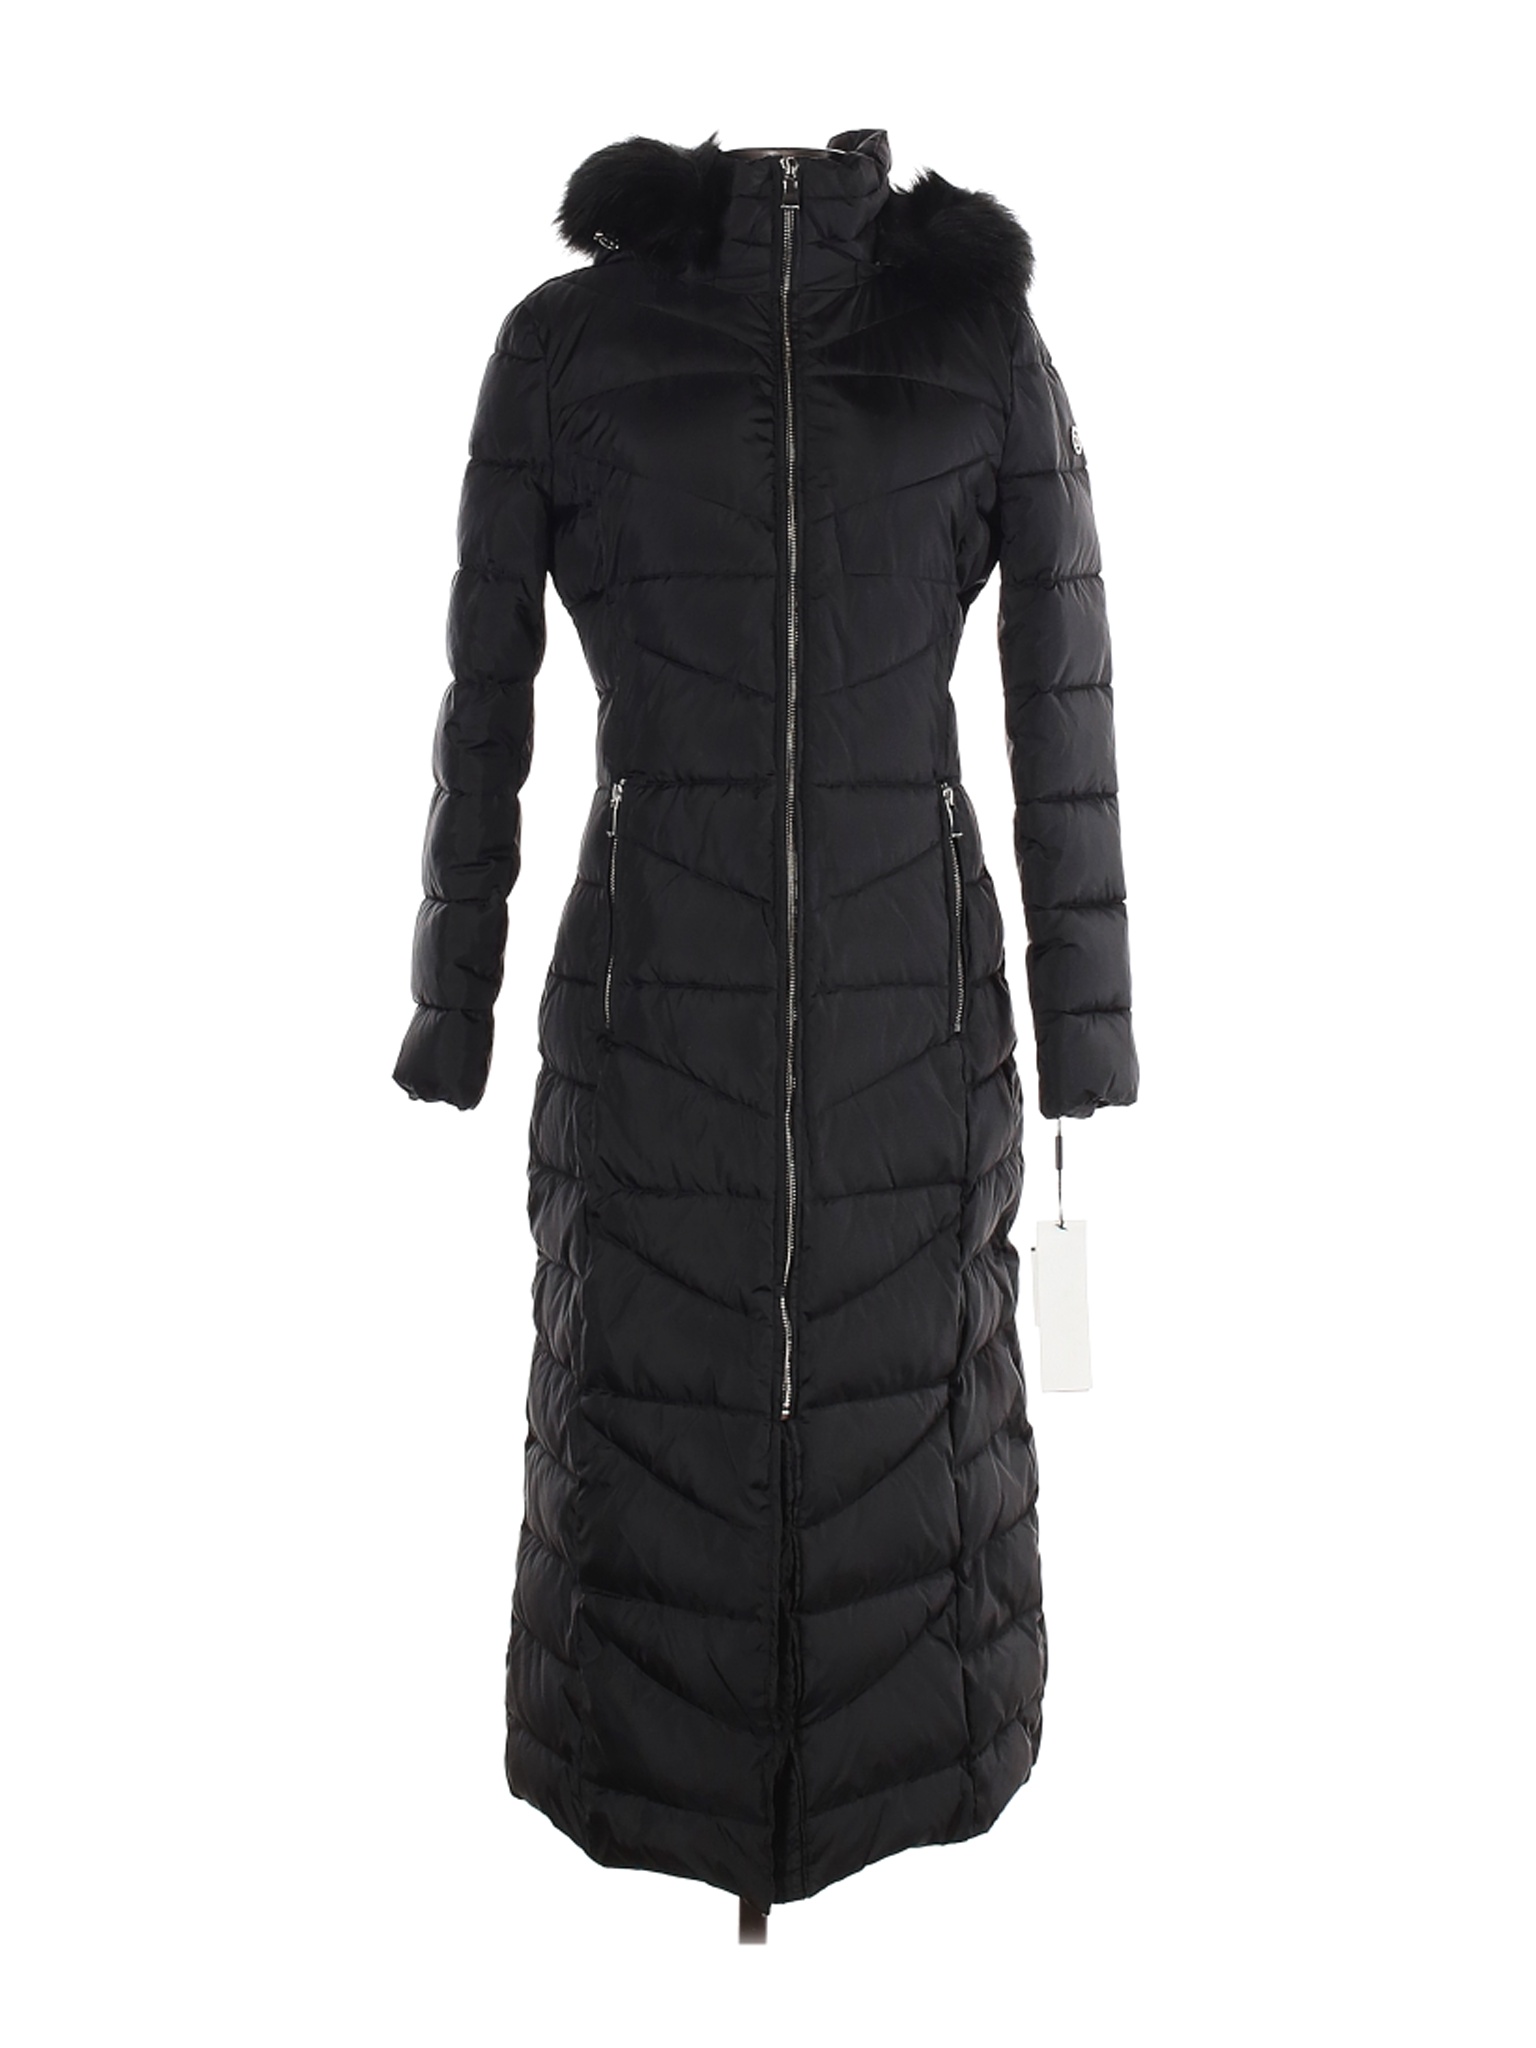 NWT Calvin Klein Women Black Coat XS | eBay